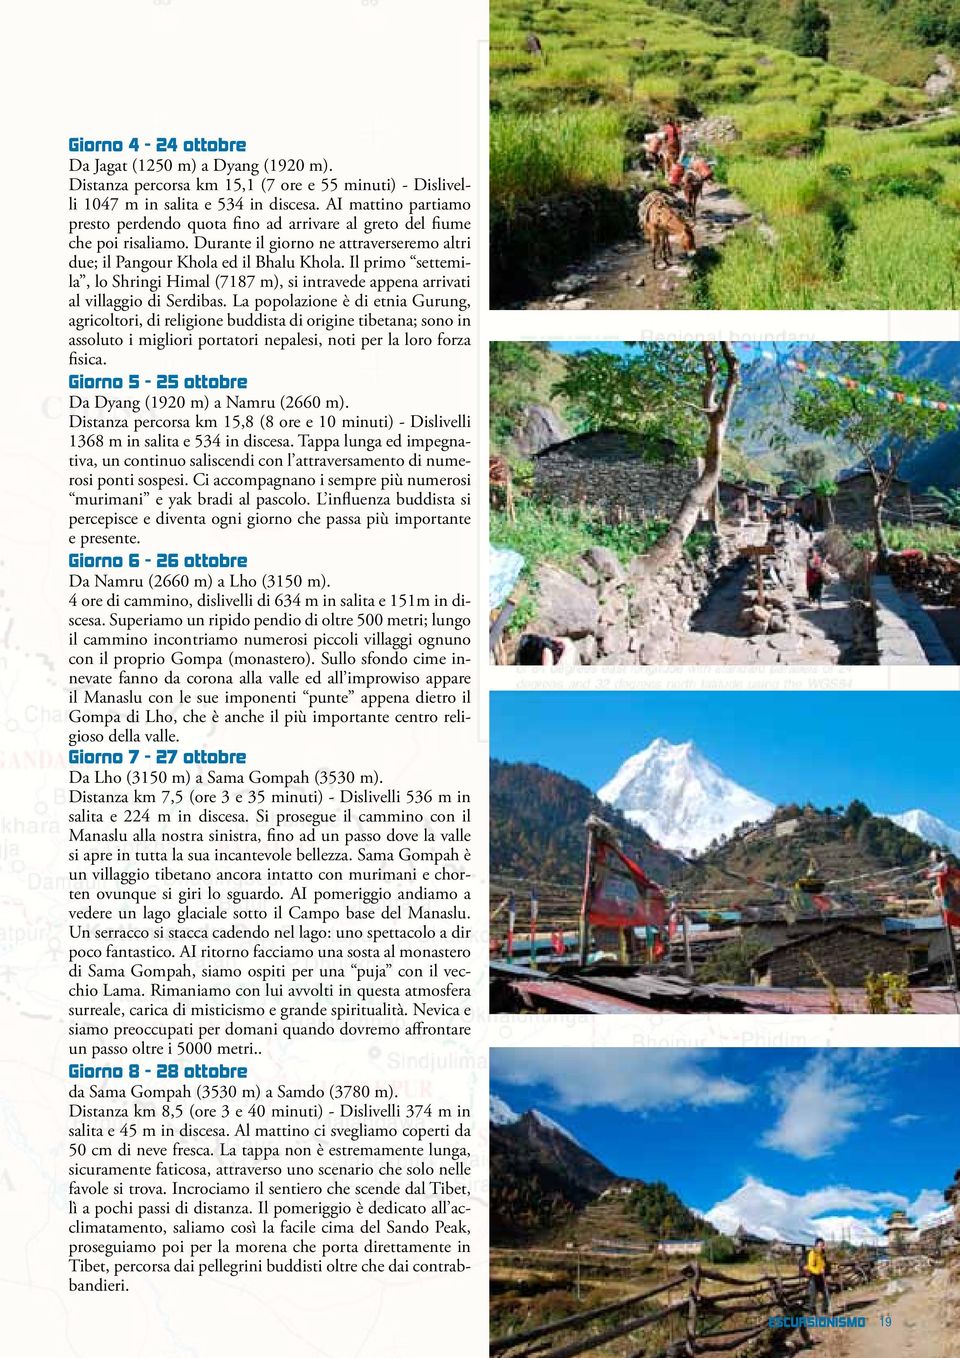 Il primo settemila, lo Shringi Himal (7187 m), si intravede appena arrivati al villaggio di Serdibas.